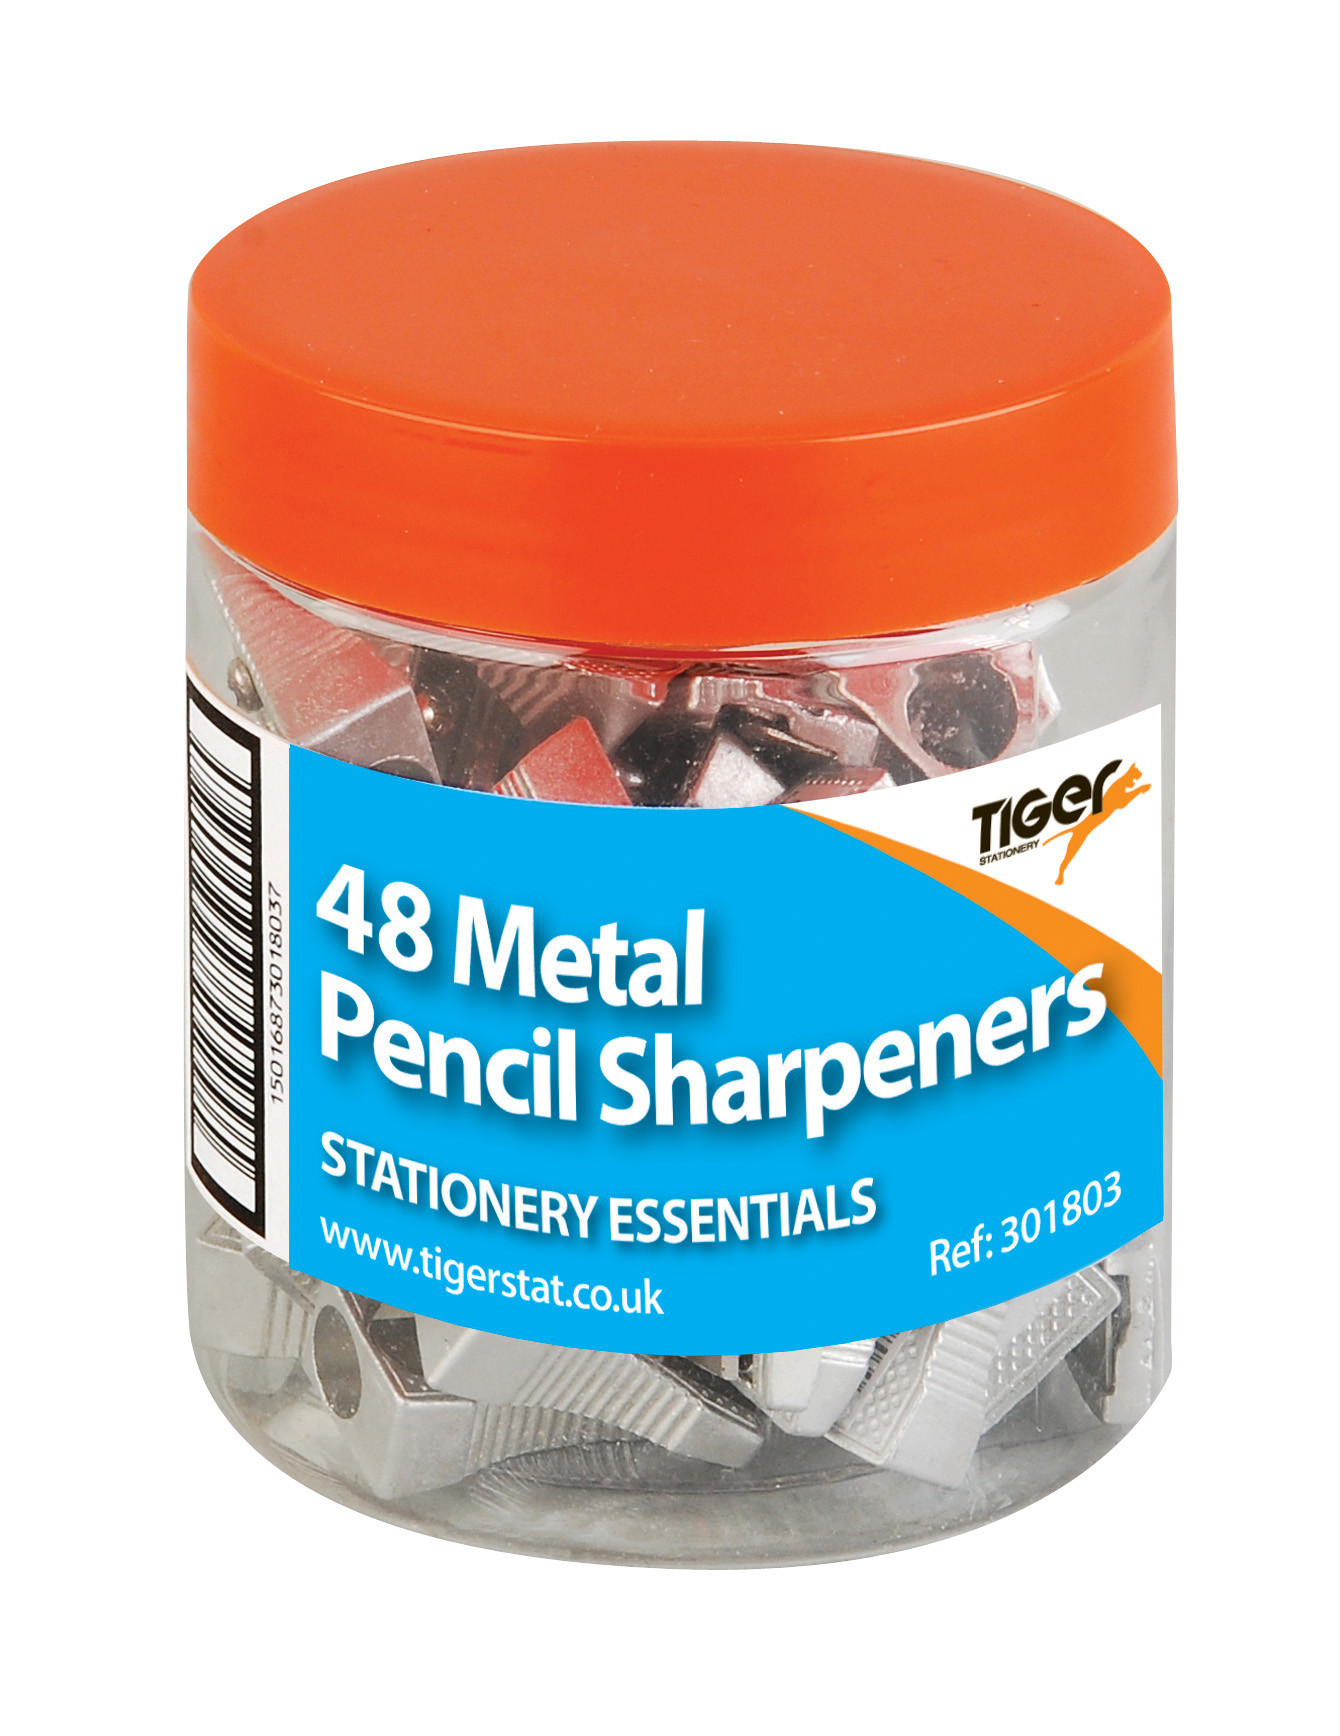 Metal Pencil Sharpeners in Tub